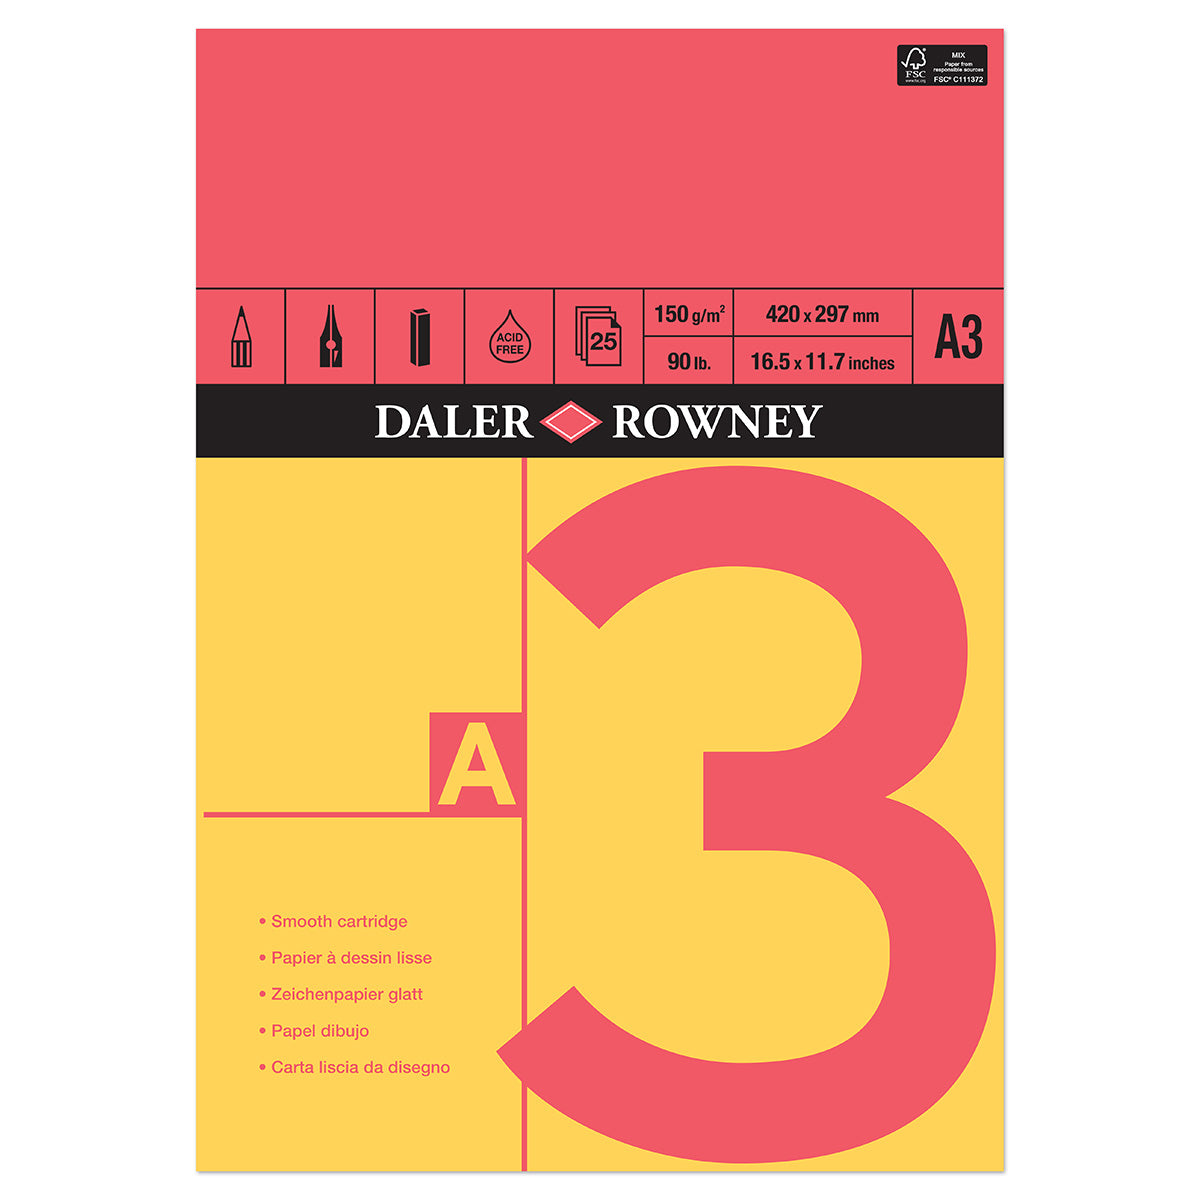 Daler Rowney - Blocco per schizzi a cartuccia gommata rossa e gialla - A3 - 150 g/m²